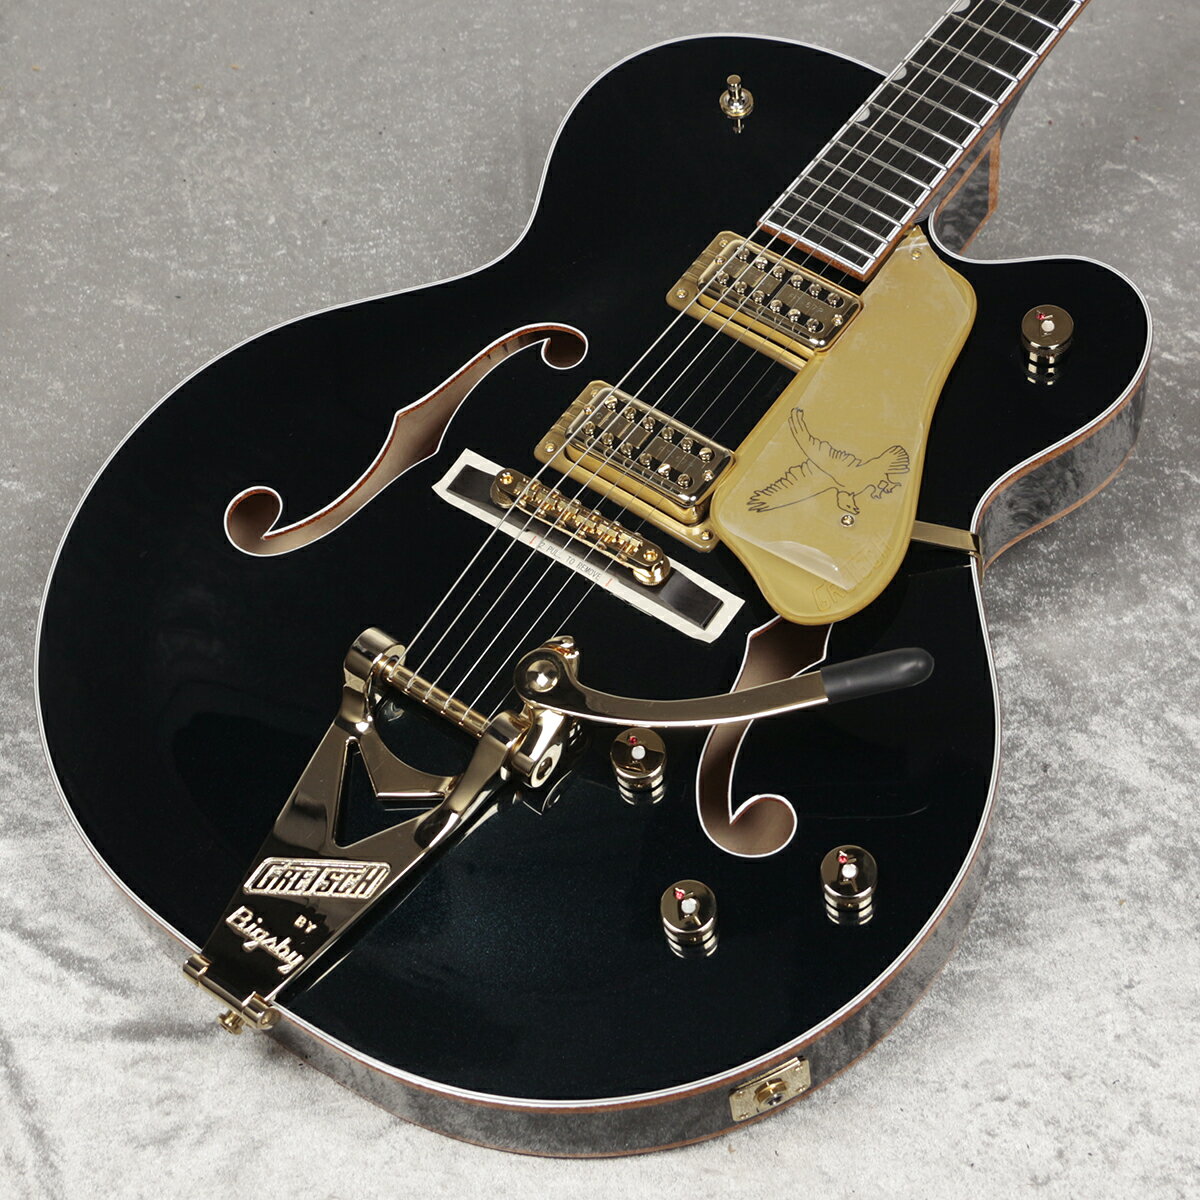 G6136TG Players Edition FalconTM Hollow Body with String-Thru Bigsby and Gold Hardware G6136TG Players Edition FalconTM Hollow Body with String-Thru Bigsby and Gold Hardwareは、歴史上最も望まれてい るギターの一つです。クラシックな外観から、深く繊細なサウンドまで、こ の優雅なギターは、自分の音楽をワンランク上の次元で奏でたいと望んで いるプレイヤーに理想的なモデルです。 新開発のFT-67 Filter’TronTMハムバッカーは、Gretschの正統なヴィン テージヴォイシングを再現しながらも、現代の演奏スタイルに合わせて幅 広いトーンが得られるように設計されています。このパワフルな2基のピッ クアップは、オープンでピュアなトップエンド、艶やかなミッドレンジ、力強 いローエンド、バランスの取れたハーモニクスを提供し、他の楽器とシー ムレスに調和するトーンを実現します。Gretschの革新的な”ML”ブレイ シングは、2.5インチ厚のメイプルボディからスケール感のあるホローボ ディサウンドを生み出します。また、ブリッジ/ネックピックアップの独立し たボリュームコントロール、3ウェイピックアップトグルスイッチ、No-Load マスタートーンとマスターボリュームというコントロールにより、無限のト ーンバリエーションを実現します。滑らかなヴィンテージトーンを実現す る”Squeezebox”コンデンサーや、ボリュームを下げてもサウンドの明瞭 度を損なわない新開発のトレブルブリード回路を搭載しています。 25.5インチスケールのメイプルネックには、ロールオフ処理を施した12インチラジアスのエボニー指板と22本のミディアムジャンボフレットを配し、 スタンダードな”U”ネックシェイプを採用することで、スムーズな演奏を可 能にします。Bigsby B6GPビブラートテールピースとAdjusto-MaticTM ブリッジに加え、Graph Tech TUSQ XLナットを採用することで、チュ ーニングの安定性を高めています。Bigsbyテイルピースはストリングスル ー構造になっており、弦交換が素早くできるようになった他、振動の伝達 性が高まり、サスティンが向上します。 Midnight Sapphire、もしくはWhiteグロスウレタンフィニッシュ、ゴール ドのGrover ImperialTMロッキングチューナー、ゴールドのGアローコン トロールノブ、ゴールドスパークルバインディングのネック、ボディ、Fホー ル、印象的なパーロイドNeo-ClassicTMサムネイルインレイ、Gretschと Falconのロゴが入ったゴールドヴィンテージプレキシピックガードなど、 パワフルなサウンドとステージでの柔軟性を誇る本モデルは、「洗練」とい う言葉を具現化した逸品です。 ■付属品：ハードケース、メーカー保証書※画像はサンプルです。 主な仕様 ■Neck ヘッドストックバインディング ネック：Maple ネックフィニッシュ：Gloss ネックシェイプ：Standard "U" ネック：Set-Neck フィンガーボードラジアス：12" (305 mm) FINGERBOARD MATERIAL：Ebony ポジションインレイ：Pearloid Neo-Classic Thumbnail フレット数：22 ナット：Graph Tech TUSQ XL ナット幅：1.6875" (42.86 mm) ナットの素材：Graph Tech TUSQ XL フレットサイズ：Medium Jumbo スケール：25.5" (64.77 cm) ■ボディ ボディ：Laminated Maple ボディフィニッシュ：Gloss ボディシェイプ：Falcon ボディトップ：Arched Laminated Maple ボディバインディング：Gold Sparkle with W/B/W/B Purfling ボディバック：Arched Laminated Maple BODY STYLE：Gretsch Hollow Body Guitars ボディ素材：Laminated Maple CUTAWAY：Single Cutaway ブレイシング：ML Bracing ウェイスト：10.375" (263.52 mm) SOUND HOLE：F-Holes, Bound ■Hardware ブリッジ：Adjusto-Matic with Pinned Ebony Base ブリッジカバー/テイルピース：Bigsby B6GP String-Thru BRIDGE MOUNTING：Pinned ピックガード：Gold Plexi with Gold Gretsch Logo and Black Falcon Graphic PICKUP COVERS：Gold コントロールノブ：Jeweled G-Arrow ハードウェアフィニッシュ：Gold チューニングマシーン：Grover Imperial Locking ストリング：Nickel Plated Steel (.011-.049 Gauges) STRAP BUTTONS：Grover Strap Locks ■Electronics ブリッジピックアップ：FT-67 Filter’Tron ネックピックアップ：FT-67 Filter’Tron コントロール：Volume 1. (Neck Pickup), Volume 2. (Bridge Pickup), Master Volume w/ Treble Bleed, Master Tone w/ No-Load Pot SWITCHING：3-Position Toggle: Position 1. Bridge, Position 2. Bridge and Neck, Position 3. Neck